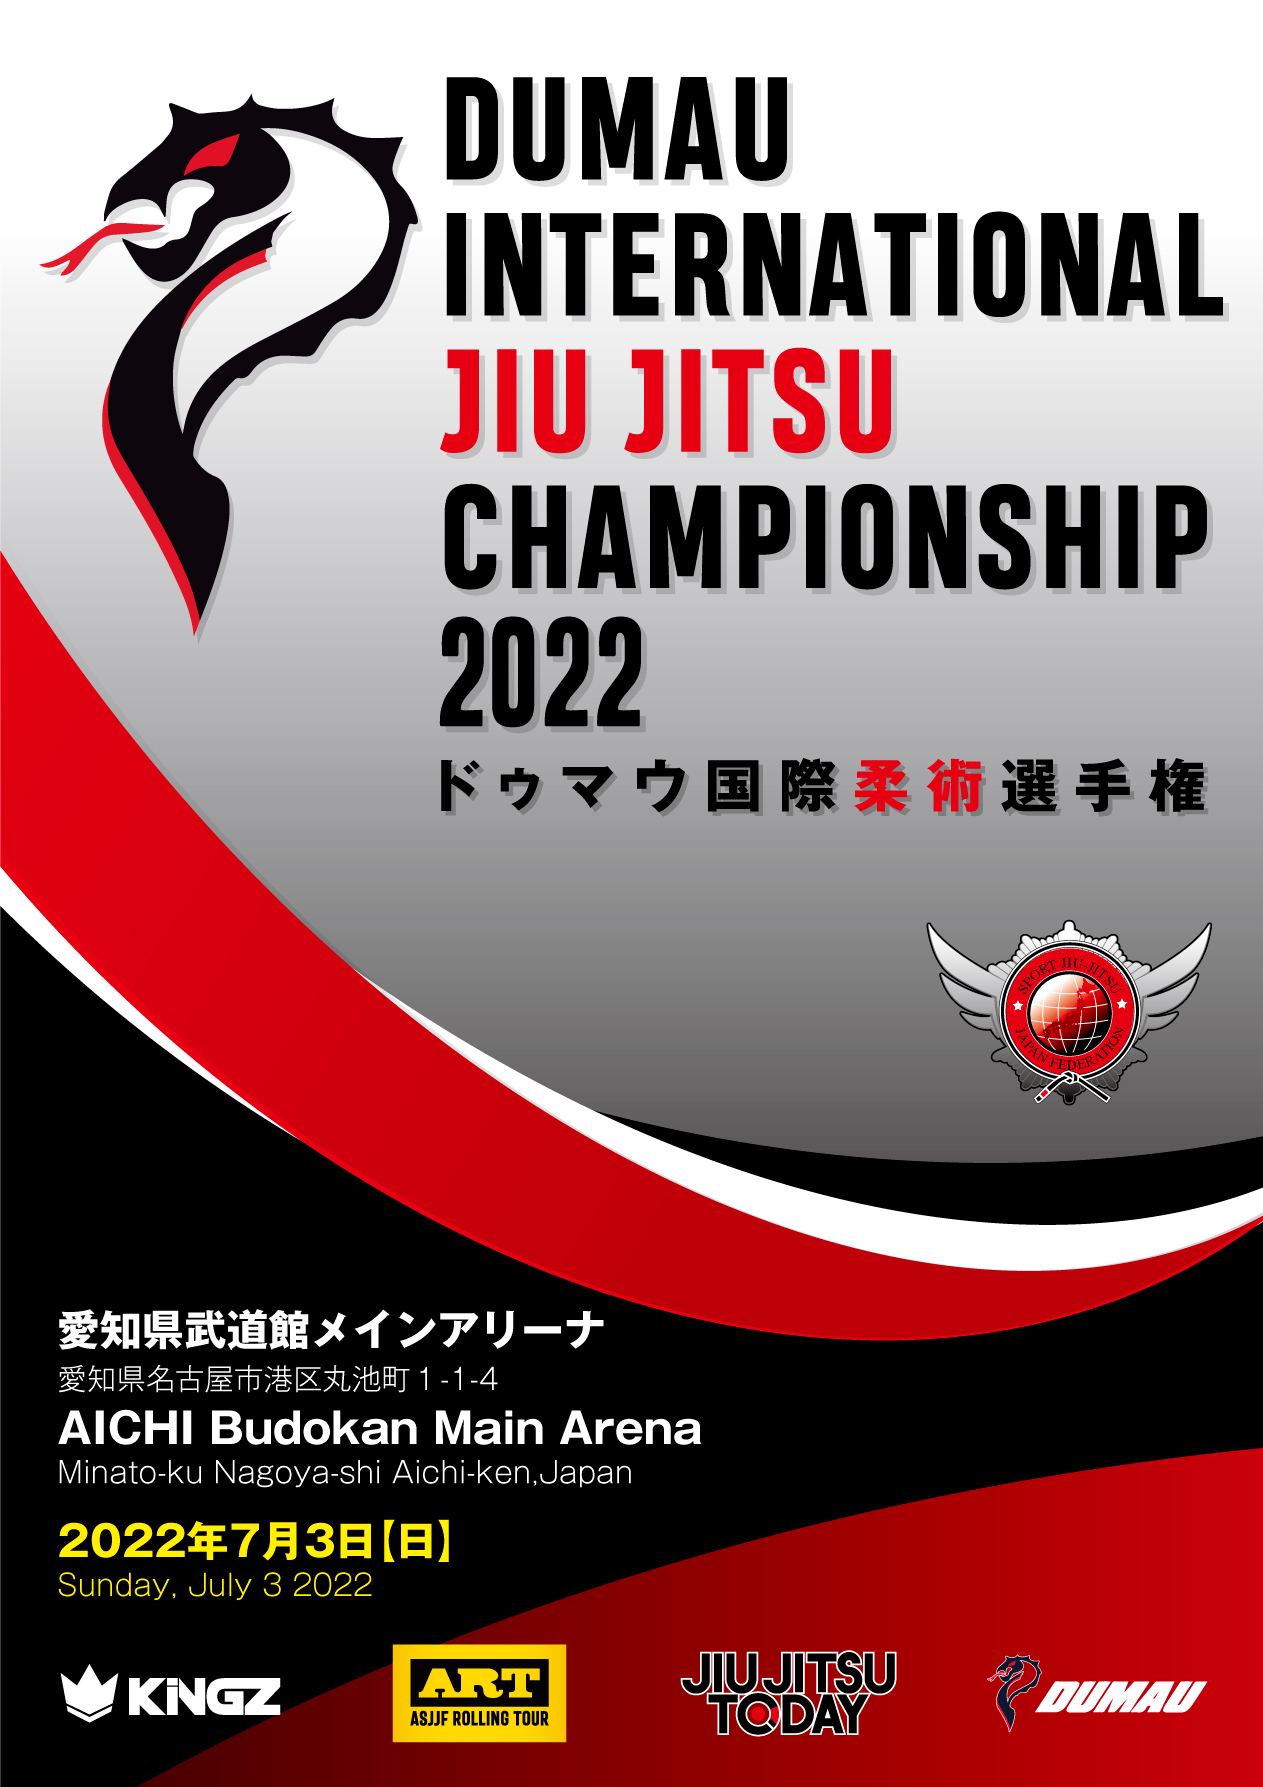 Dumau international jiu jitsu championship 2022 (In Tokai)